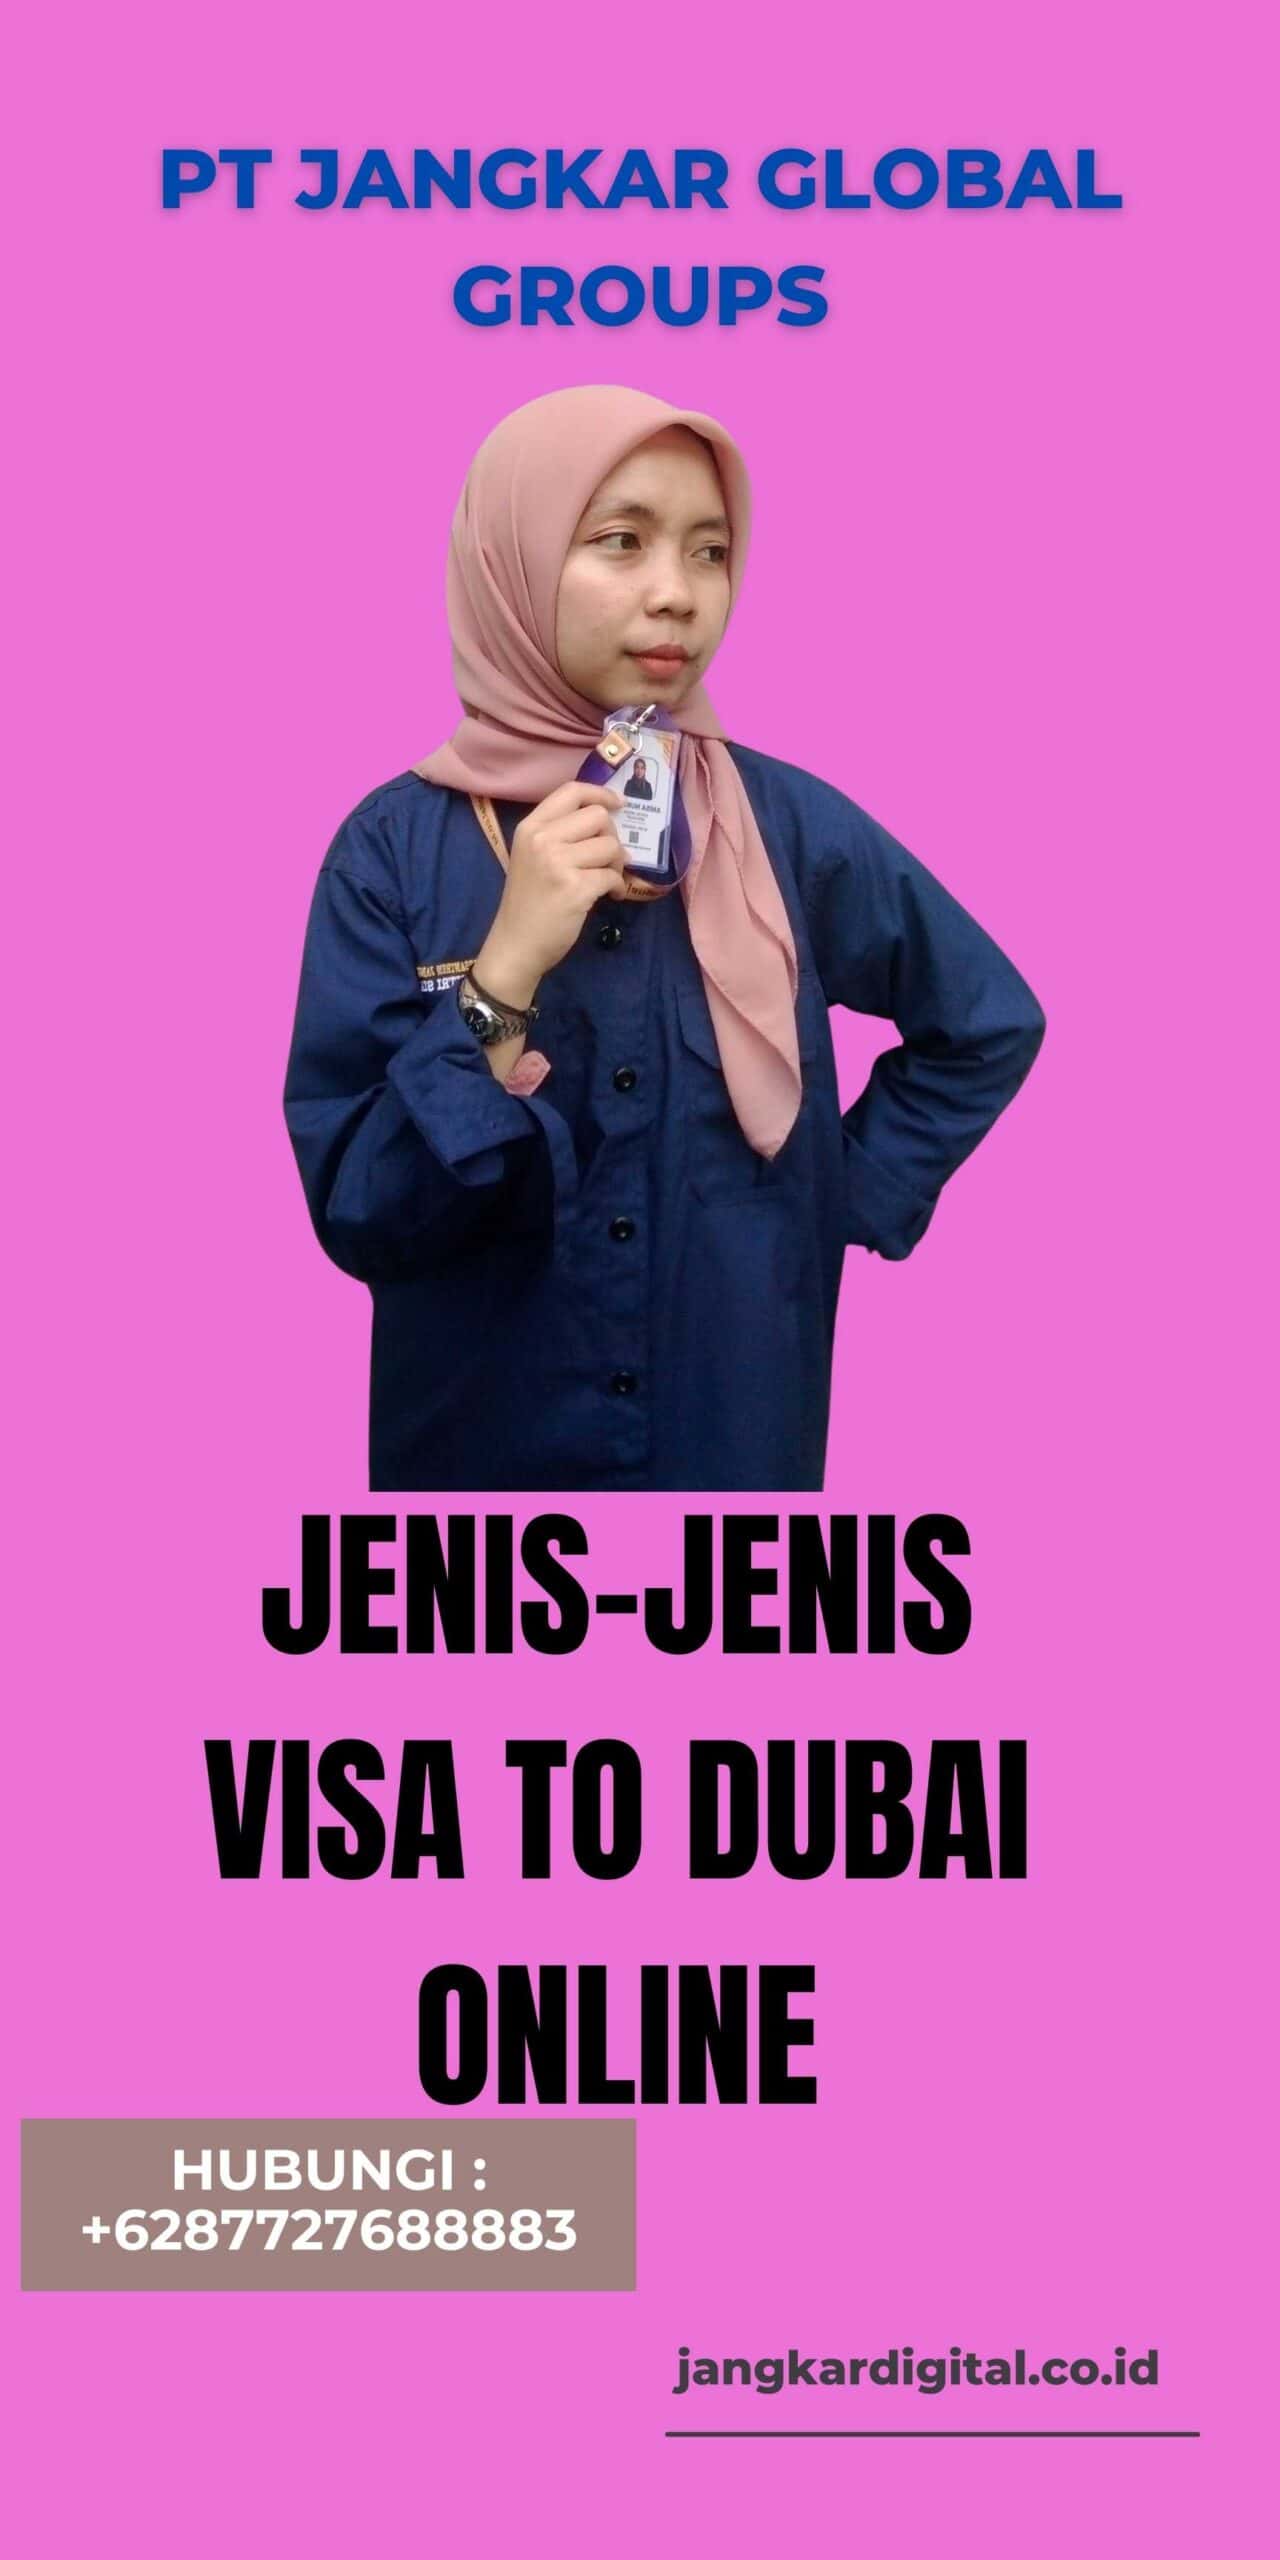 Jenis-jenis Visa to Dubai Online